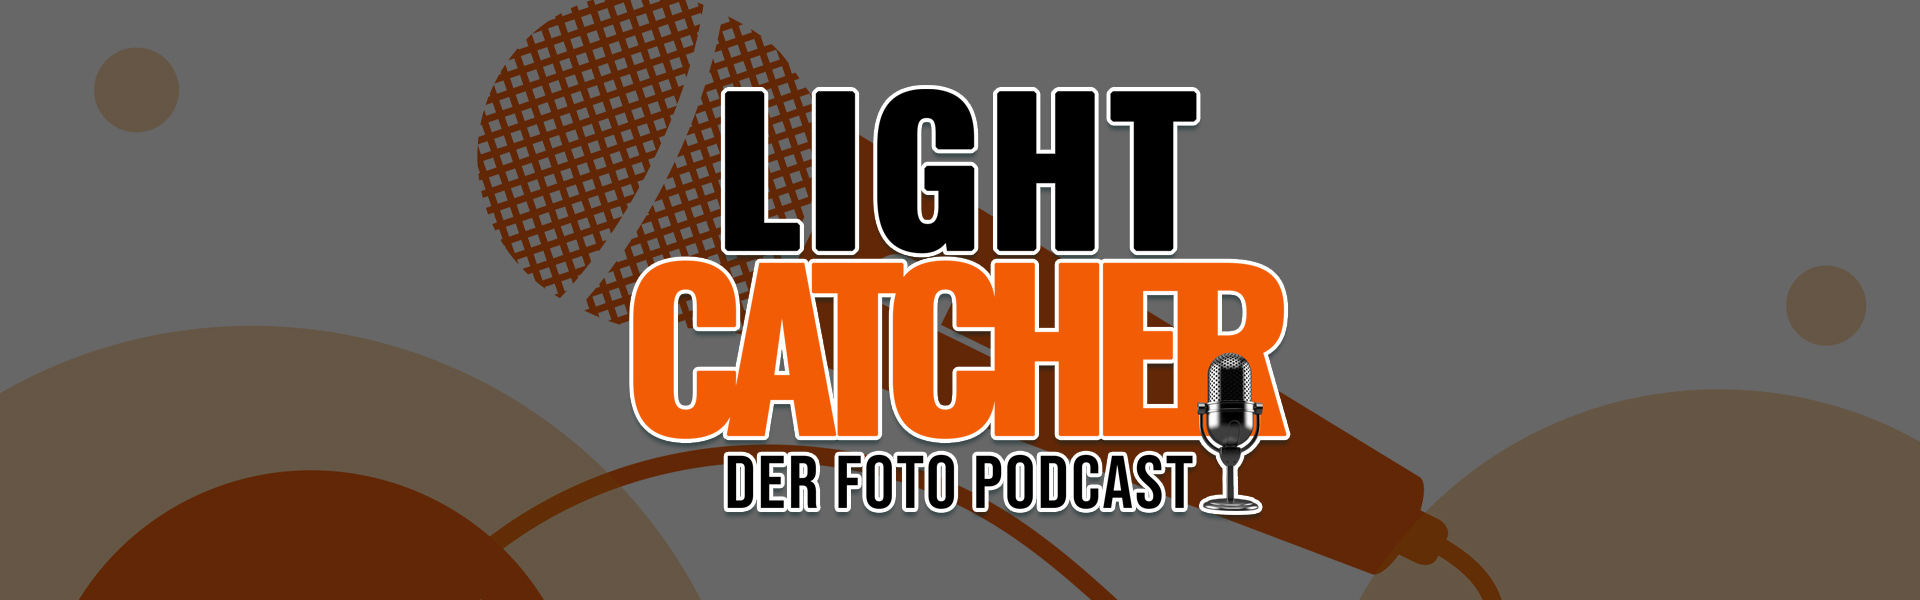 fotopodcast-lightcatcher